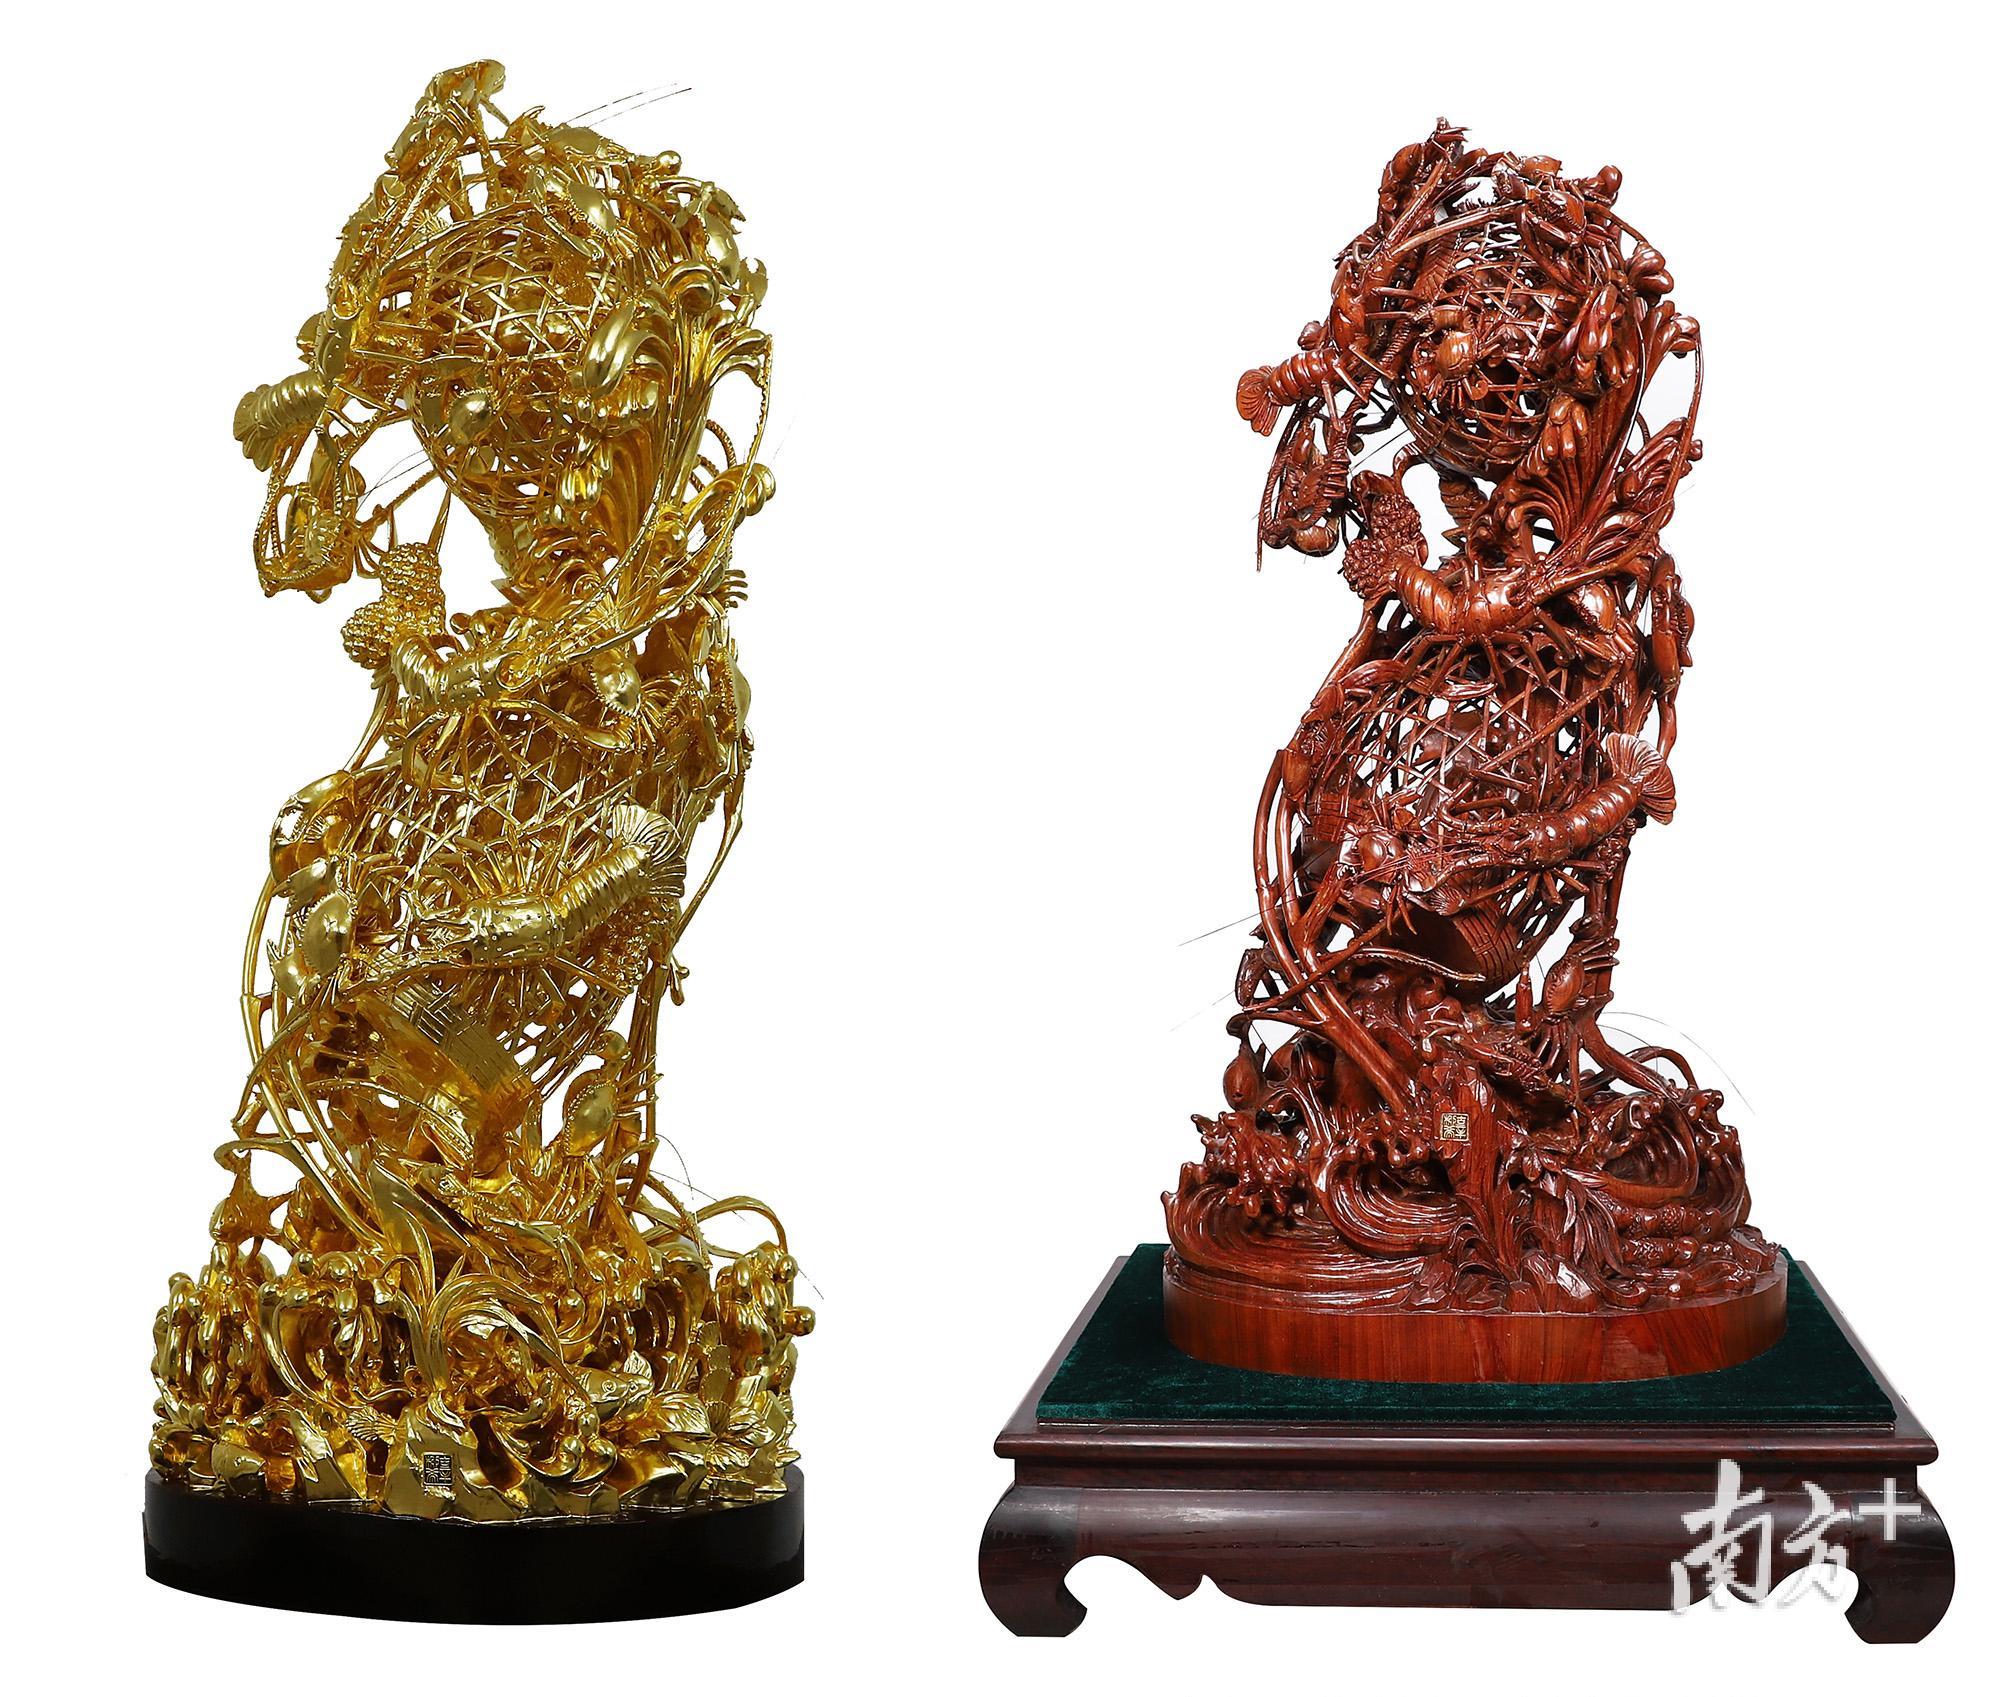 辜柳希作品贴金《双层龙虾蟹篓》（左）和花梨《双层龙虾蟹篓》（右）。“龙虾蟹篓”一直以来就是潮州市最叫得响的木雕品牌。